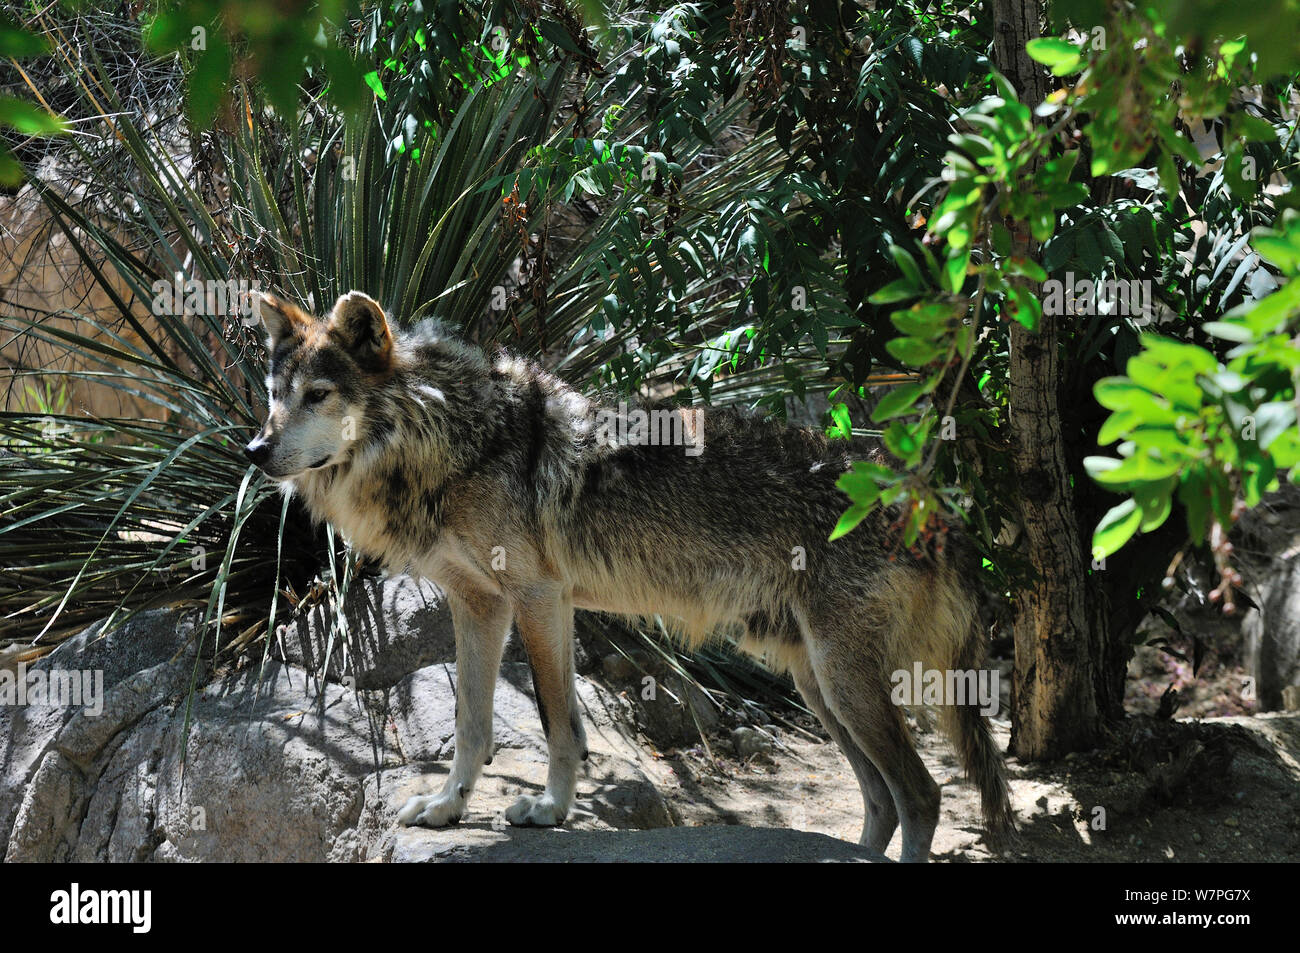 Lupo messicano (Canis lupus baileyi) captive, criticamente le specie in via di estinzione. Foto Stock